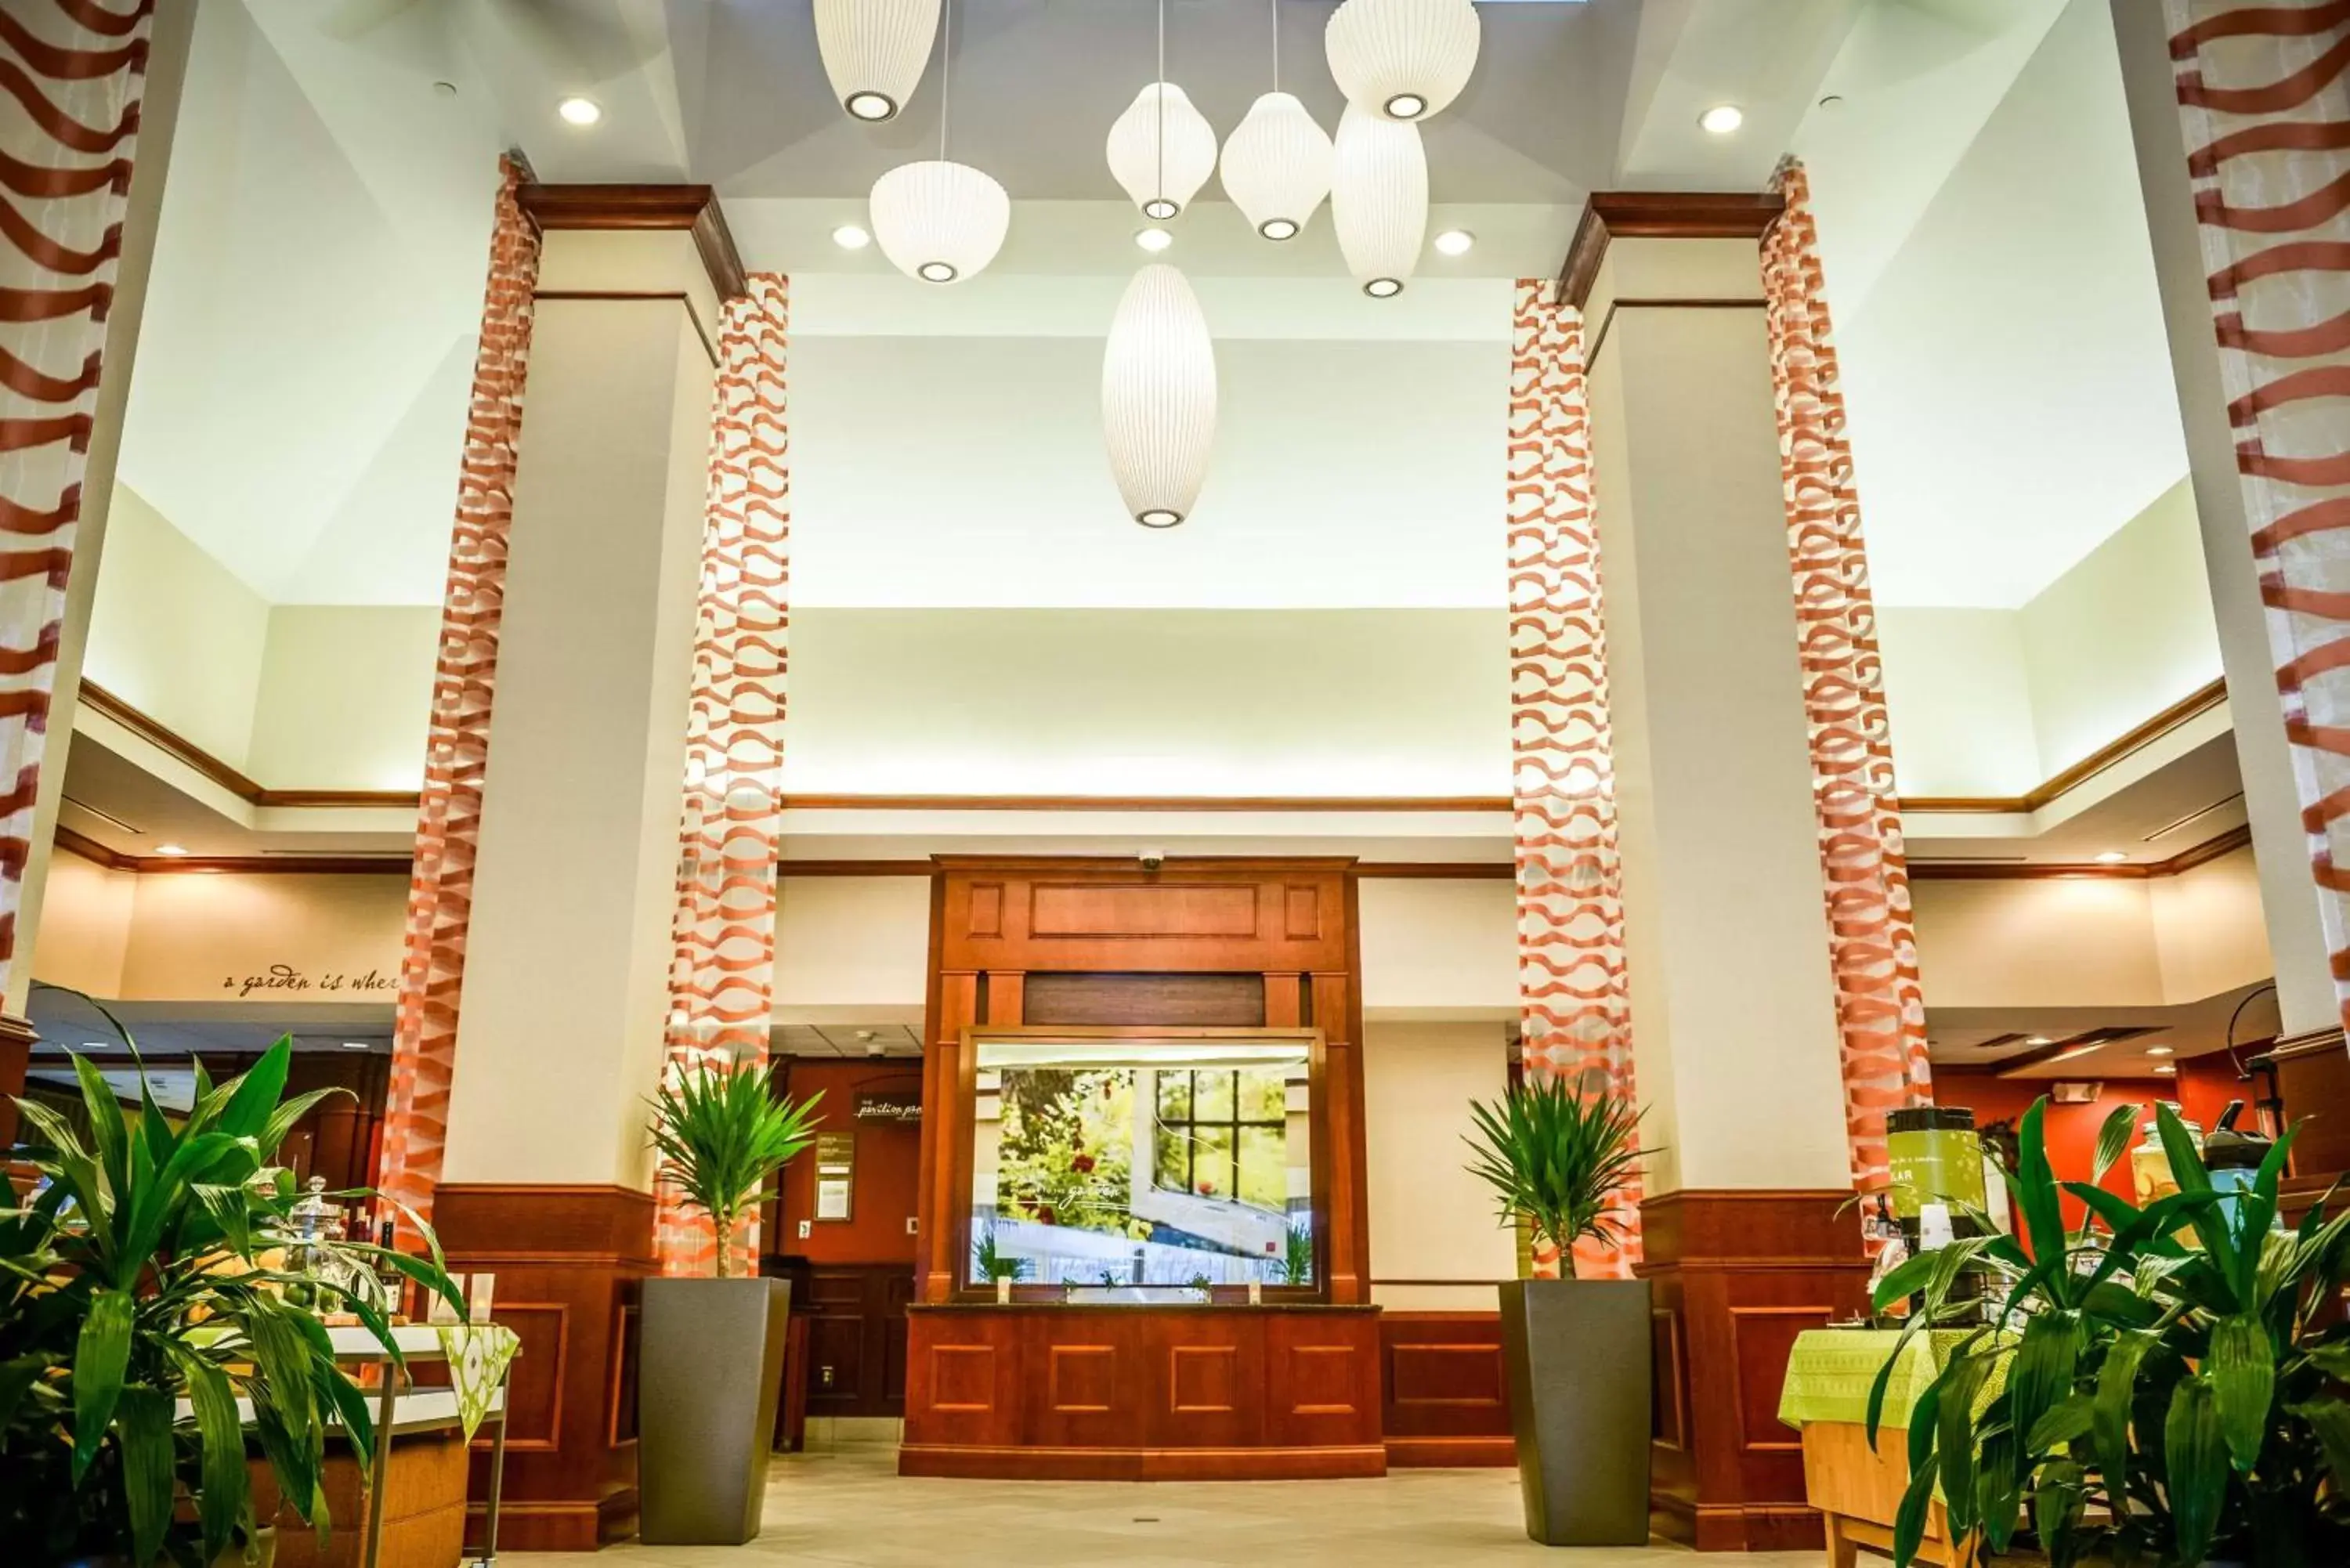 Lobby or reception, Lobby/Reception in Hilton Garden Inn Lexington Georgetown